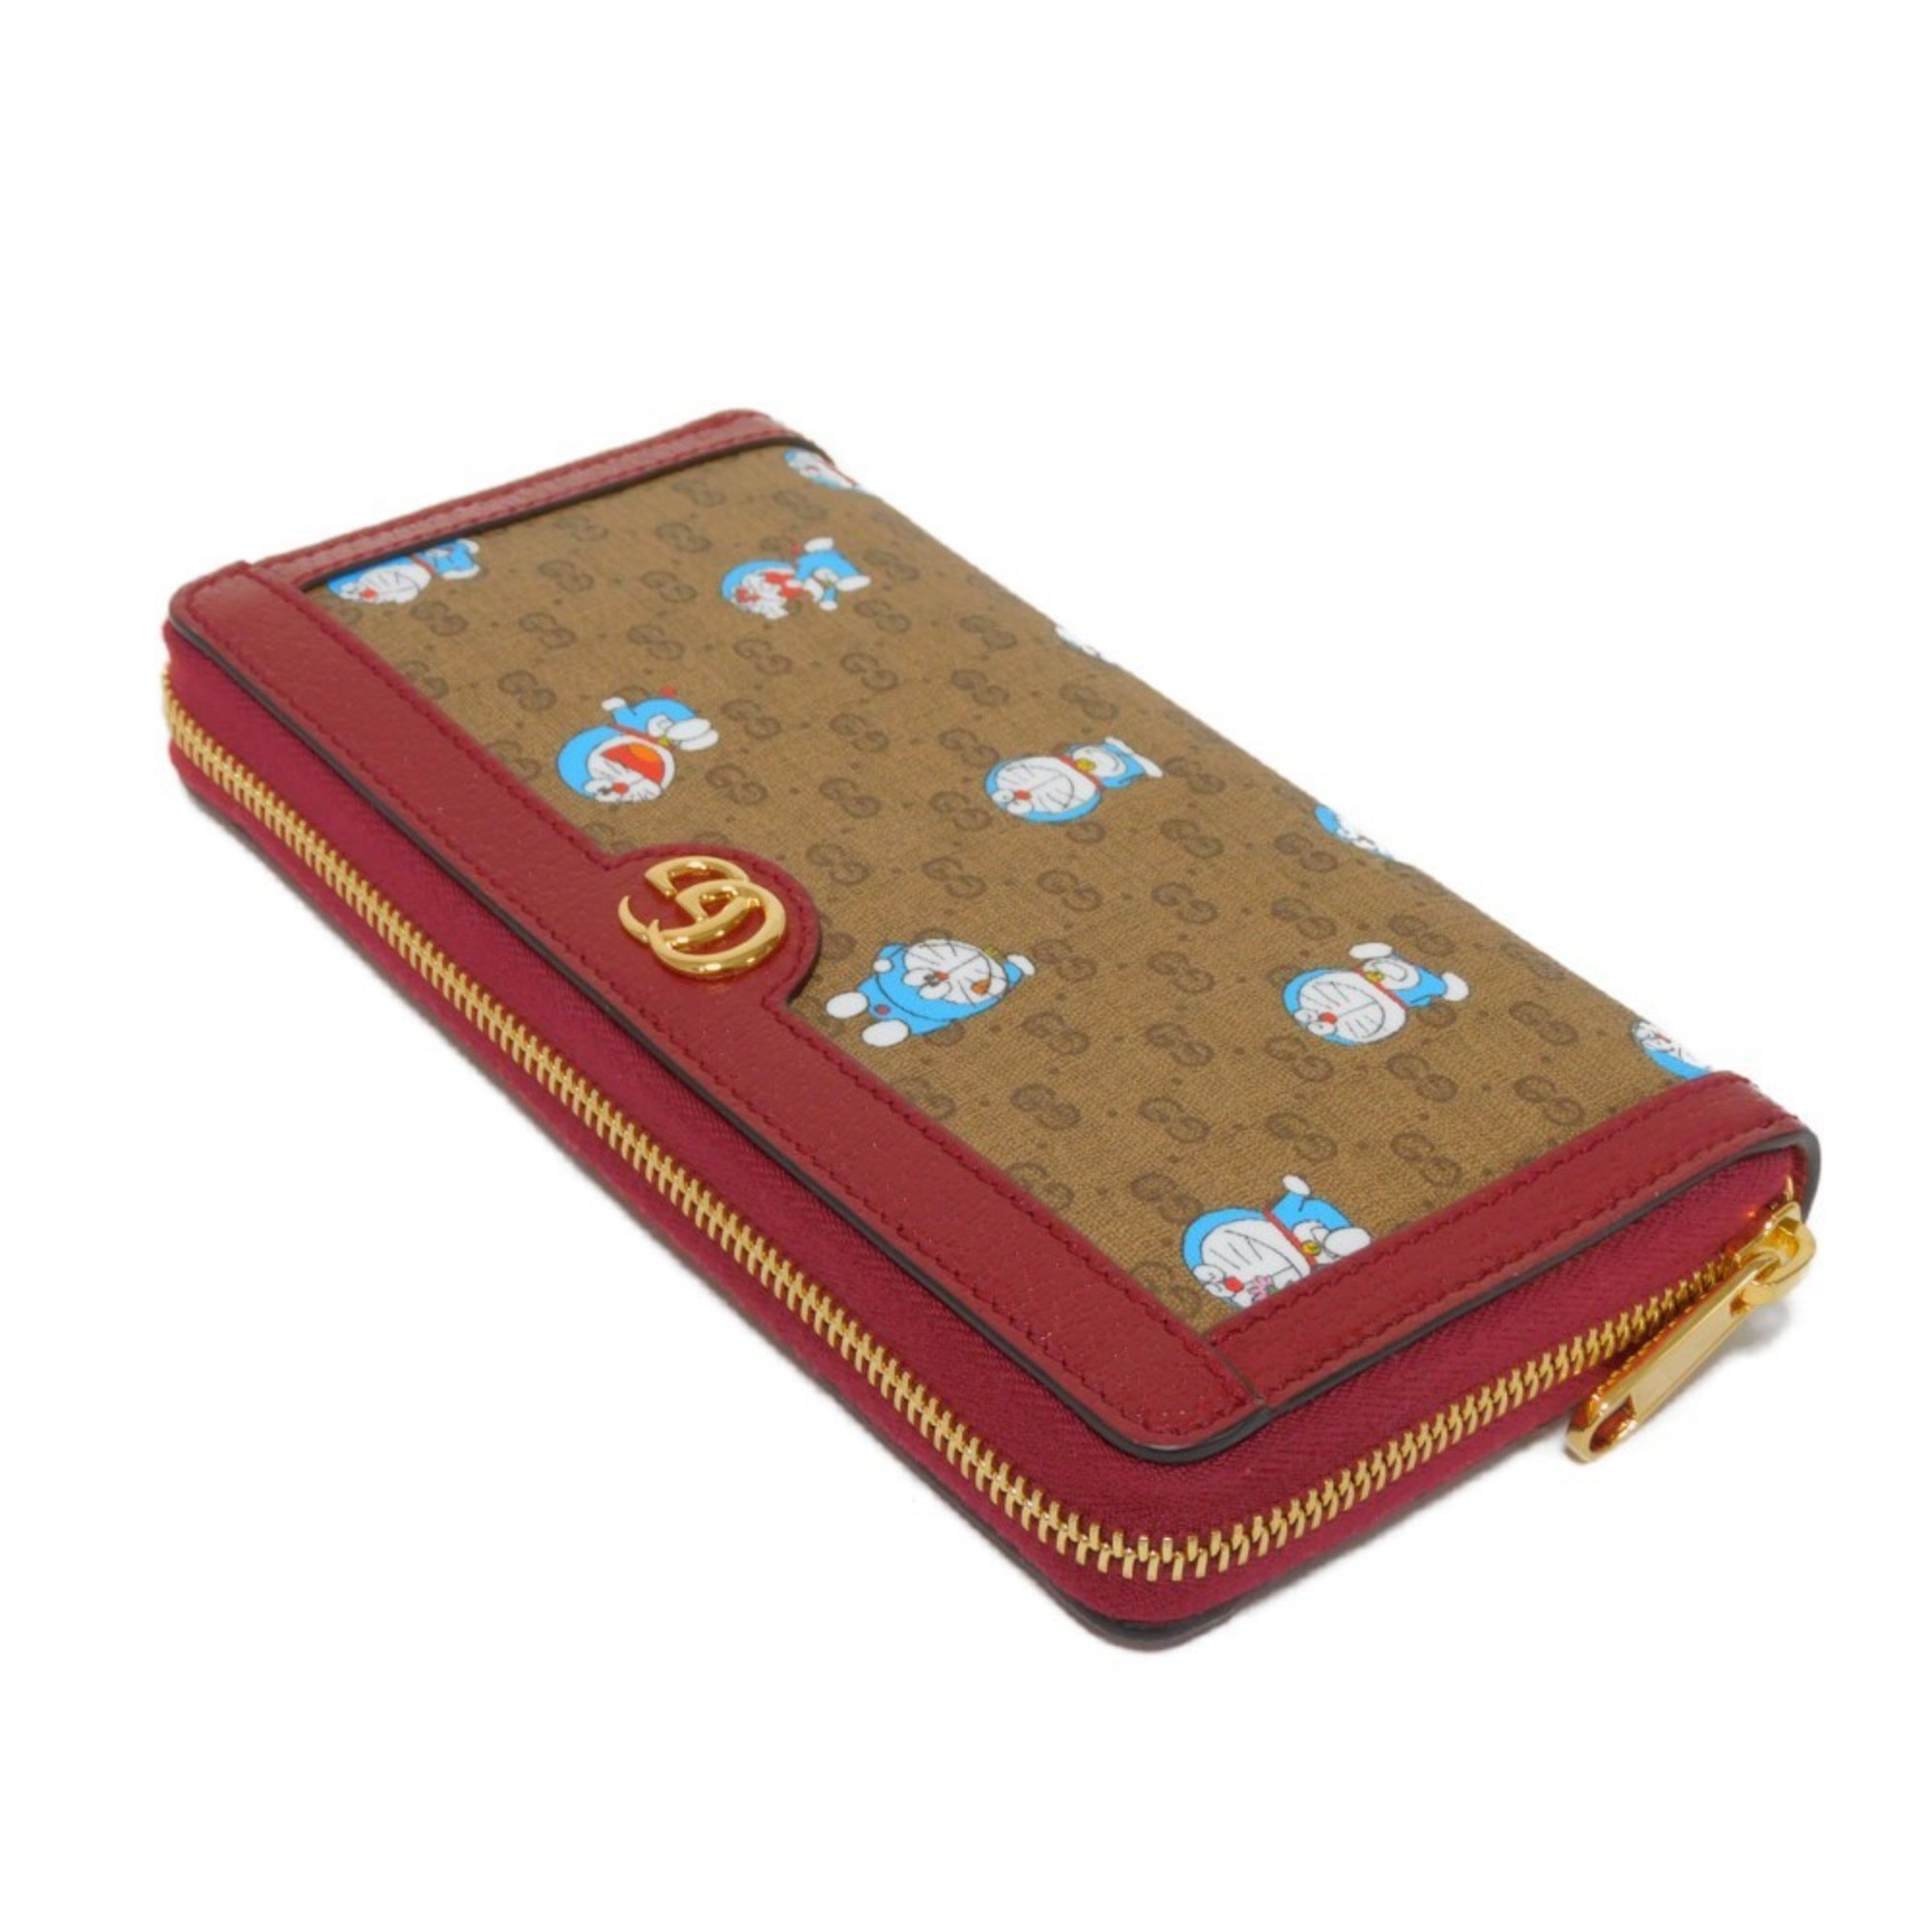 Gucci GUCCI Long Wallet Zip Around Doraemon Brown Red Round GG Supreme 647787 2TUBG 8580 Men's Women's Billfold